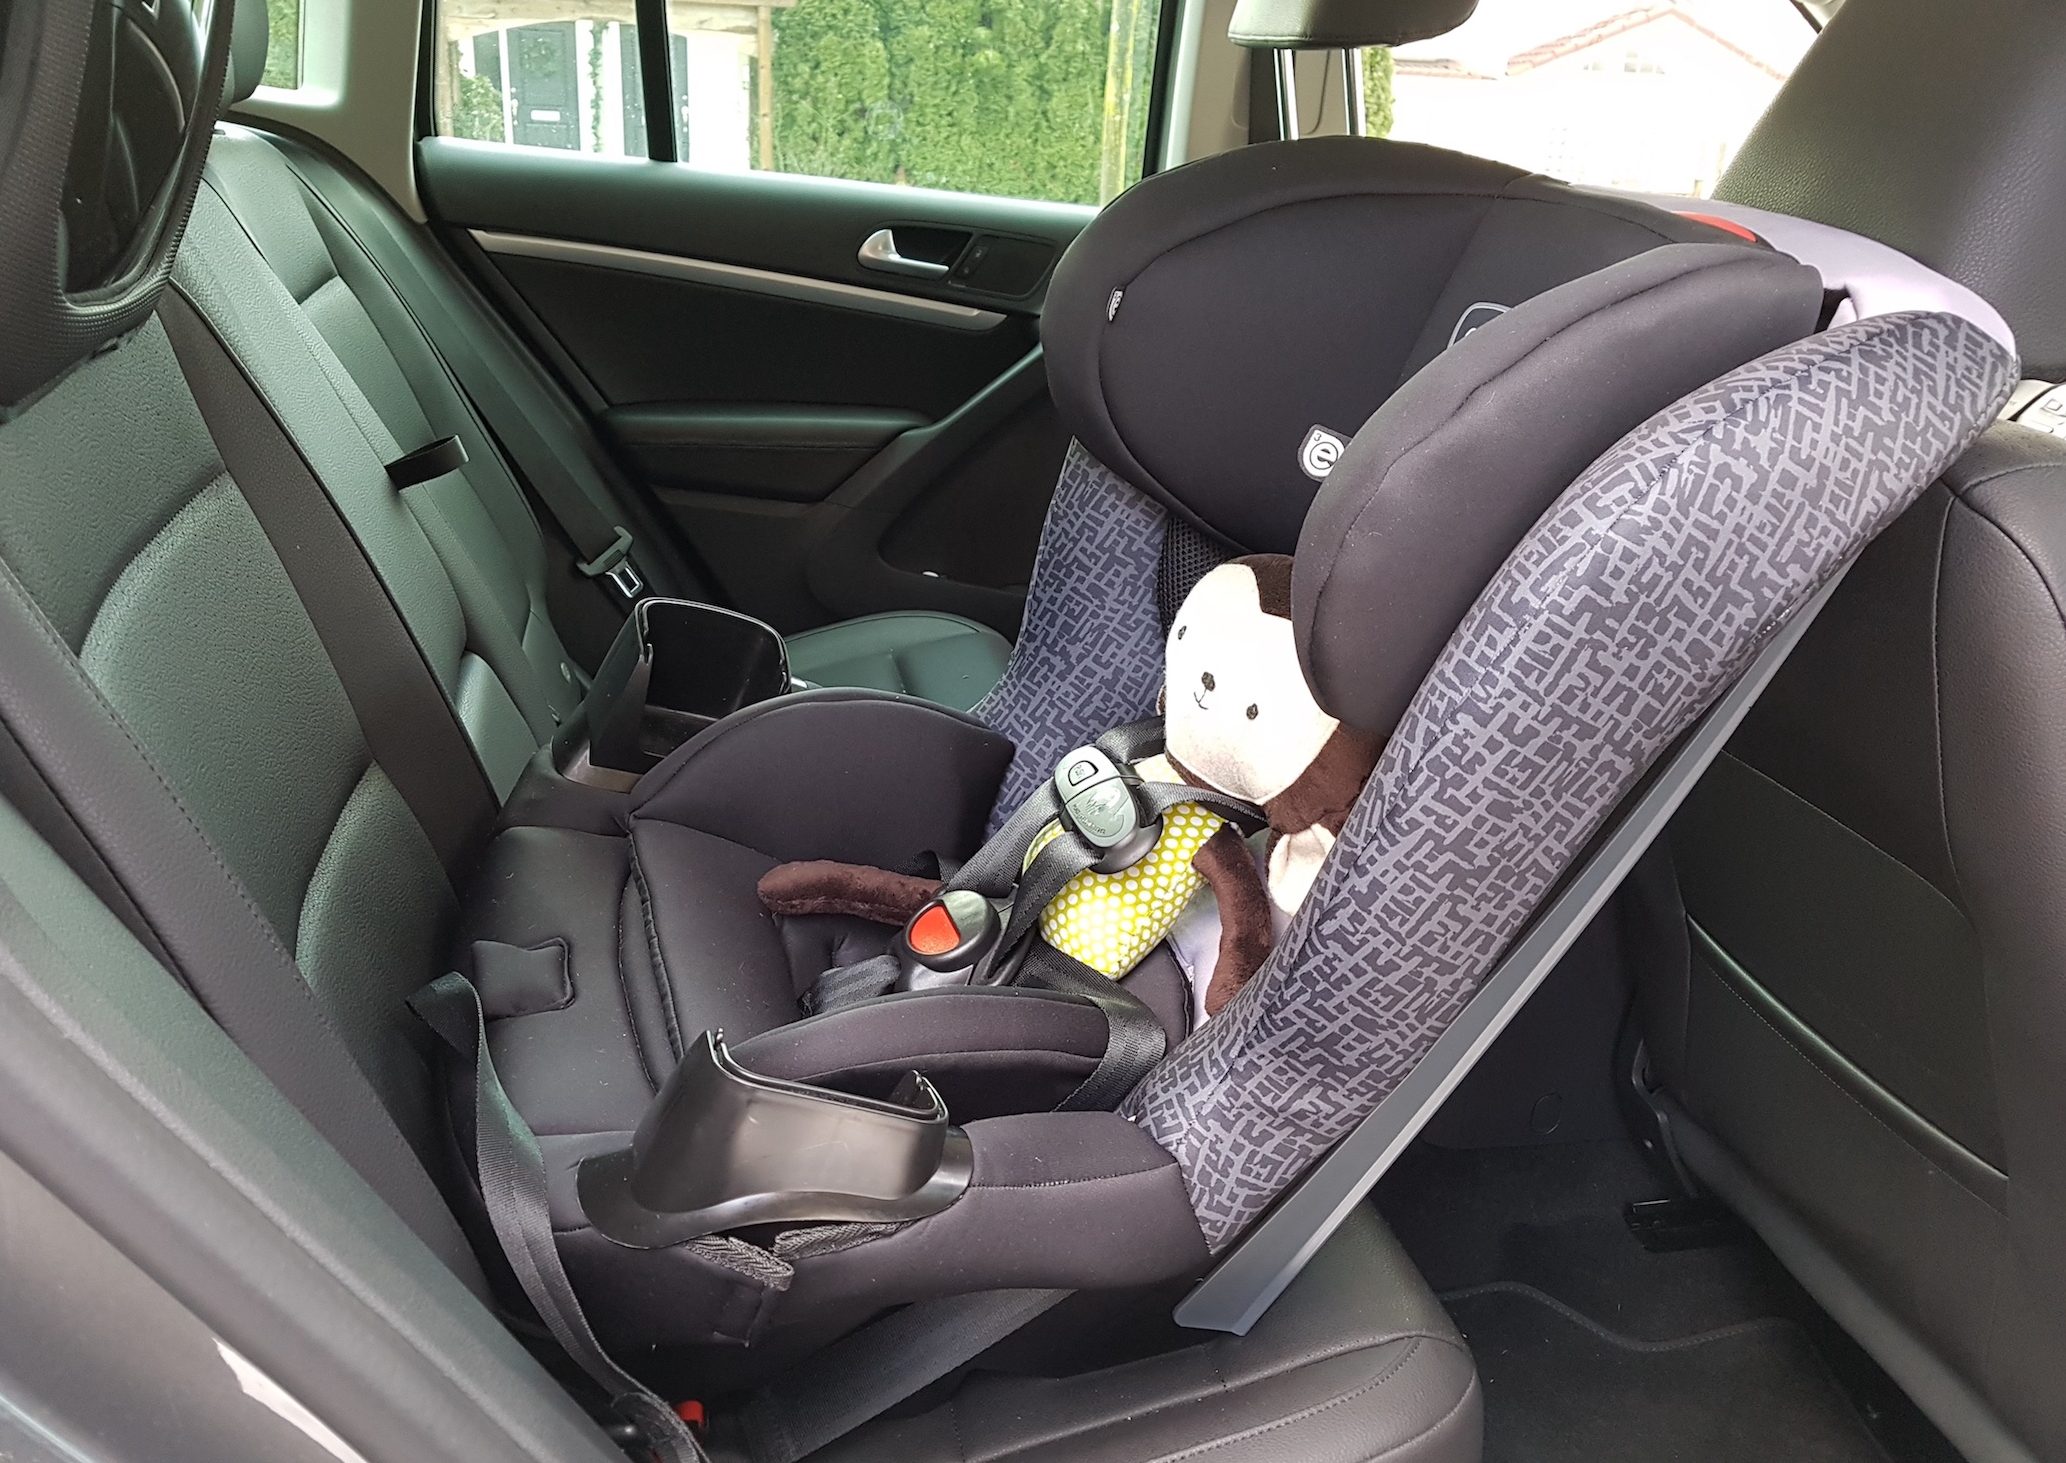 Guide d'achat d'un siège d'auto pour bébé - Blogue Best Buy